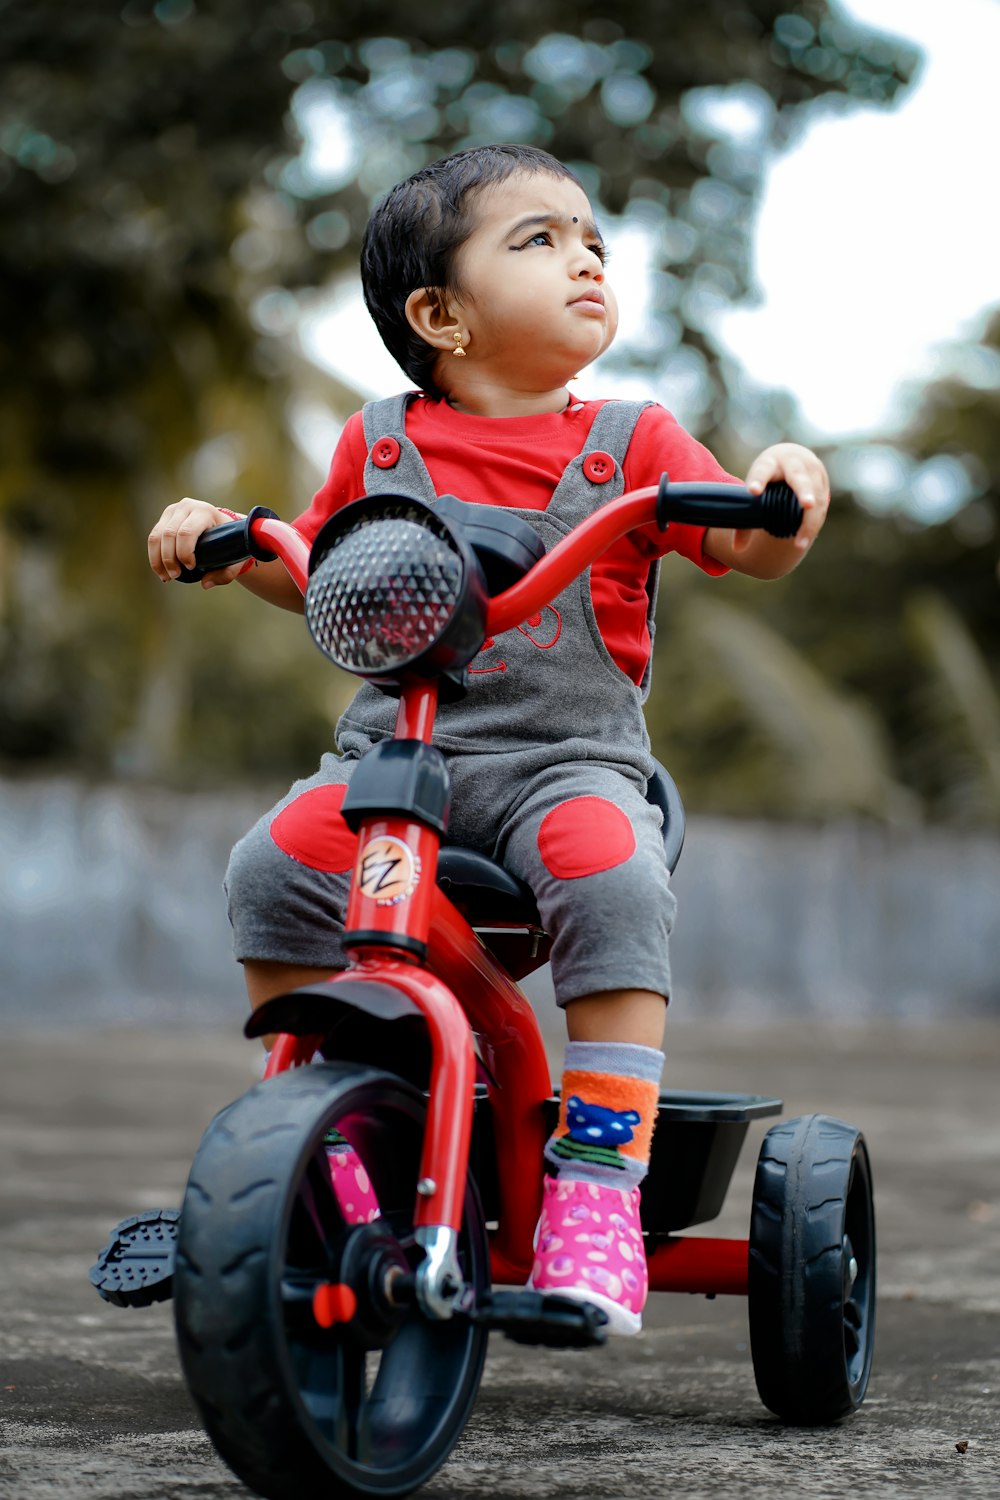 Bambino in camicia rossa che cavalca giocattolo rosso e nero della motocicletta